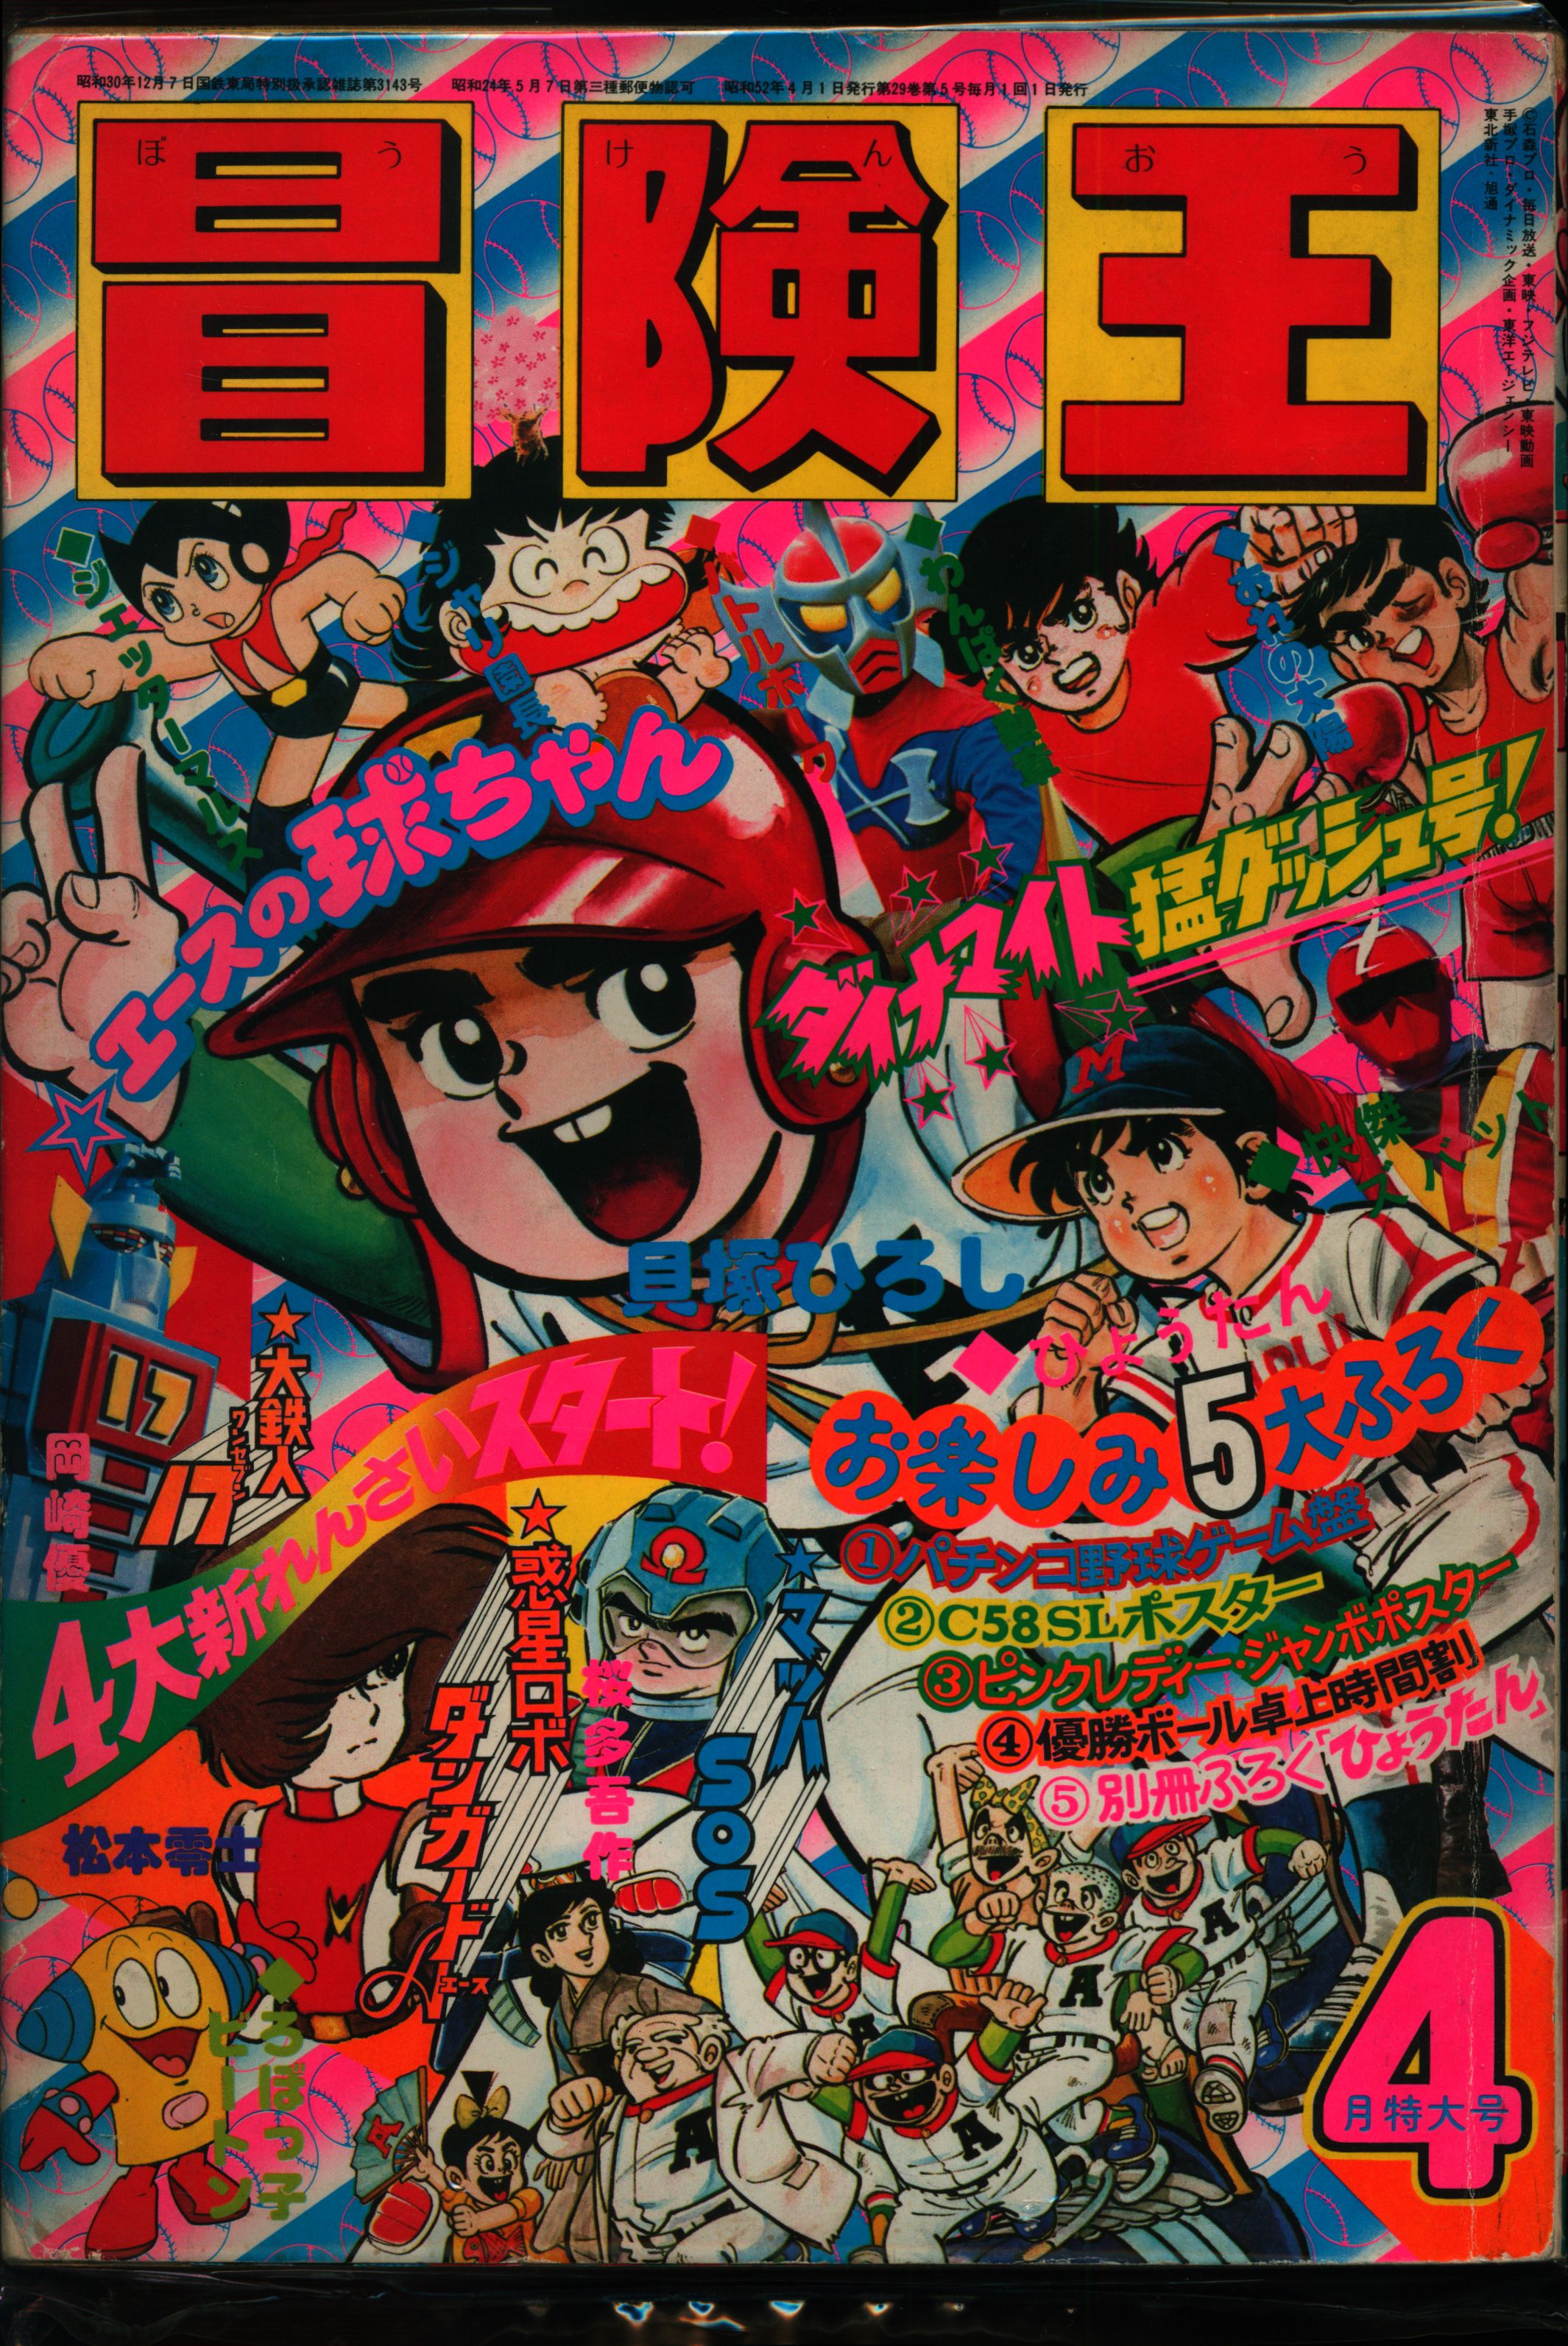 秋田書店 1977年(昭和52年)の漫画雑誌 冒険王 1977年(昭和52年)04月号